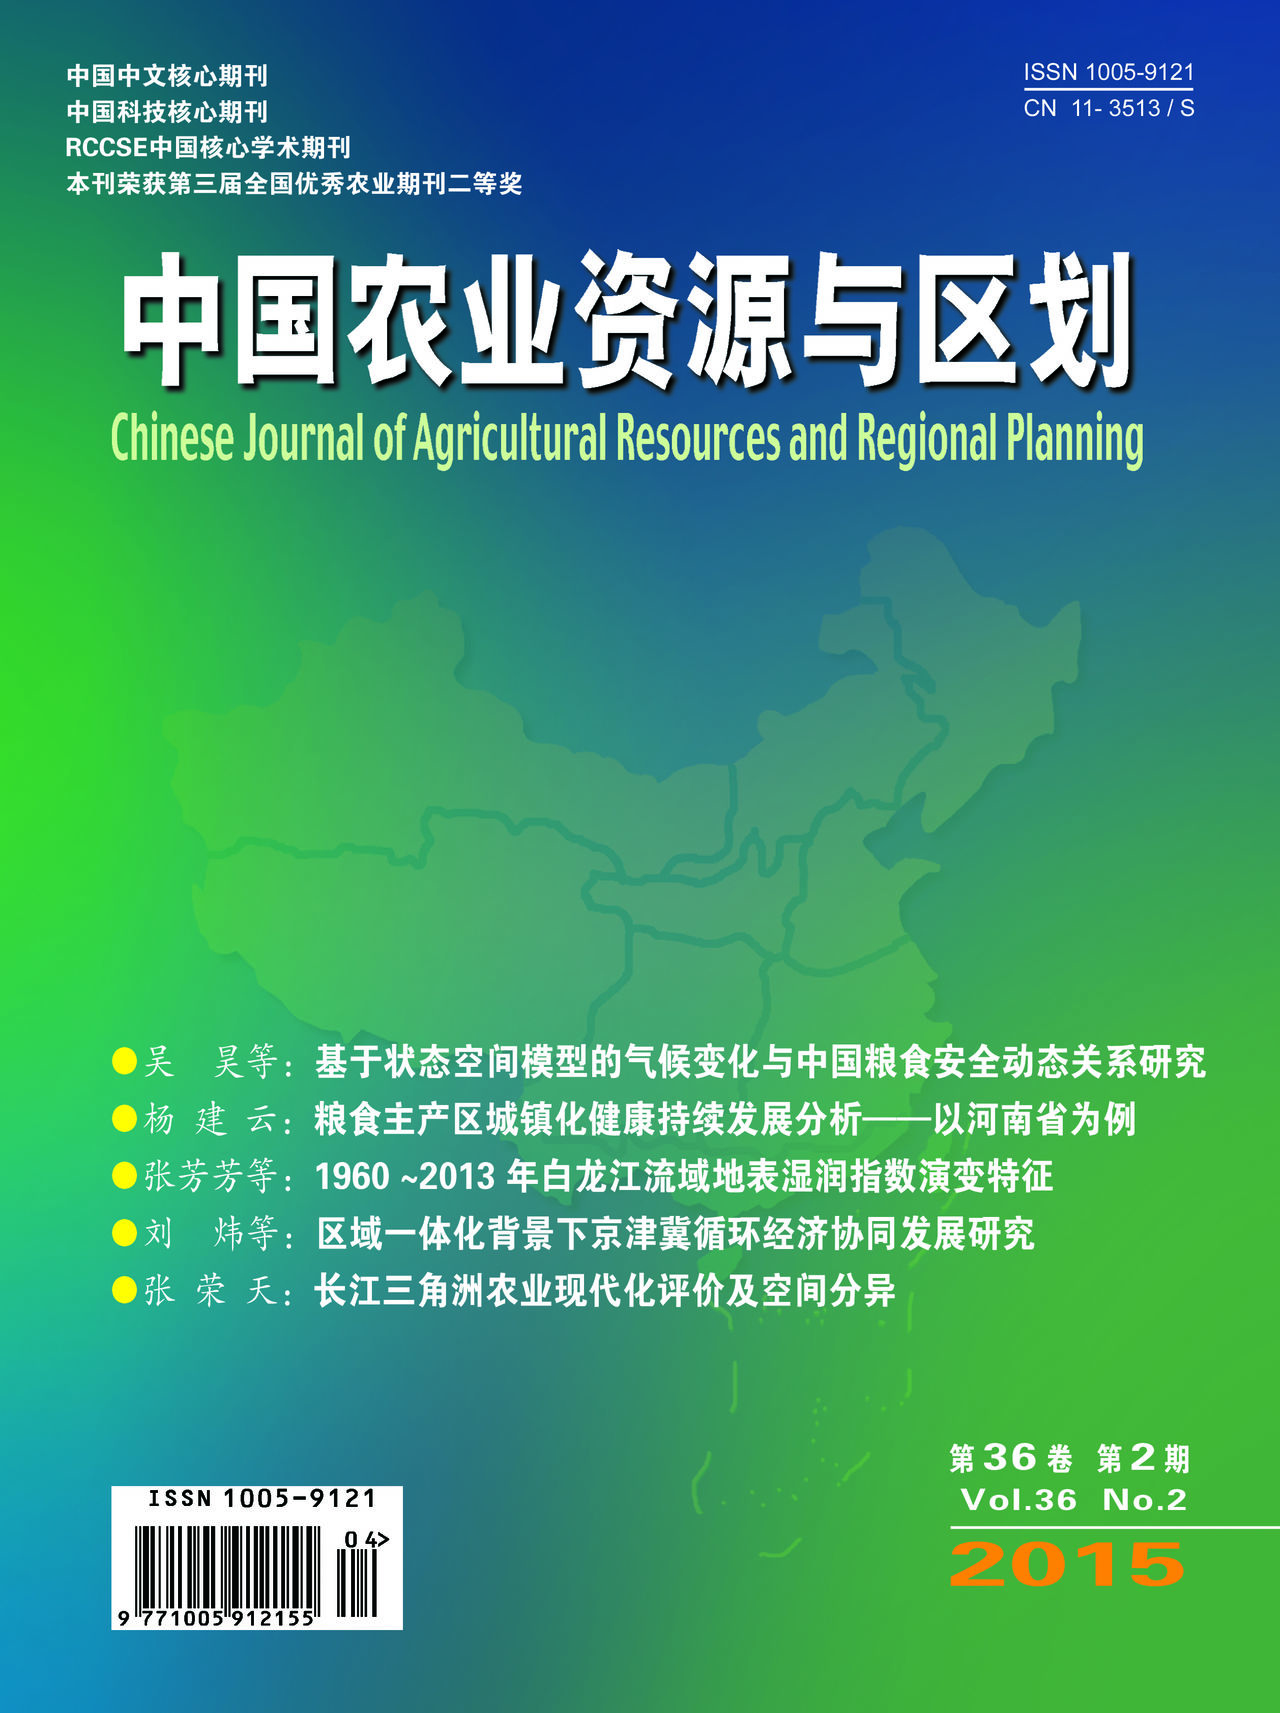 中國農業資源與區劃學會